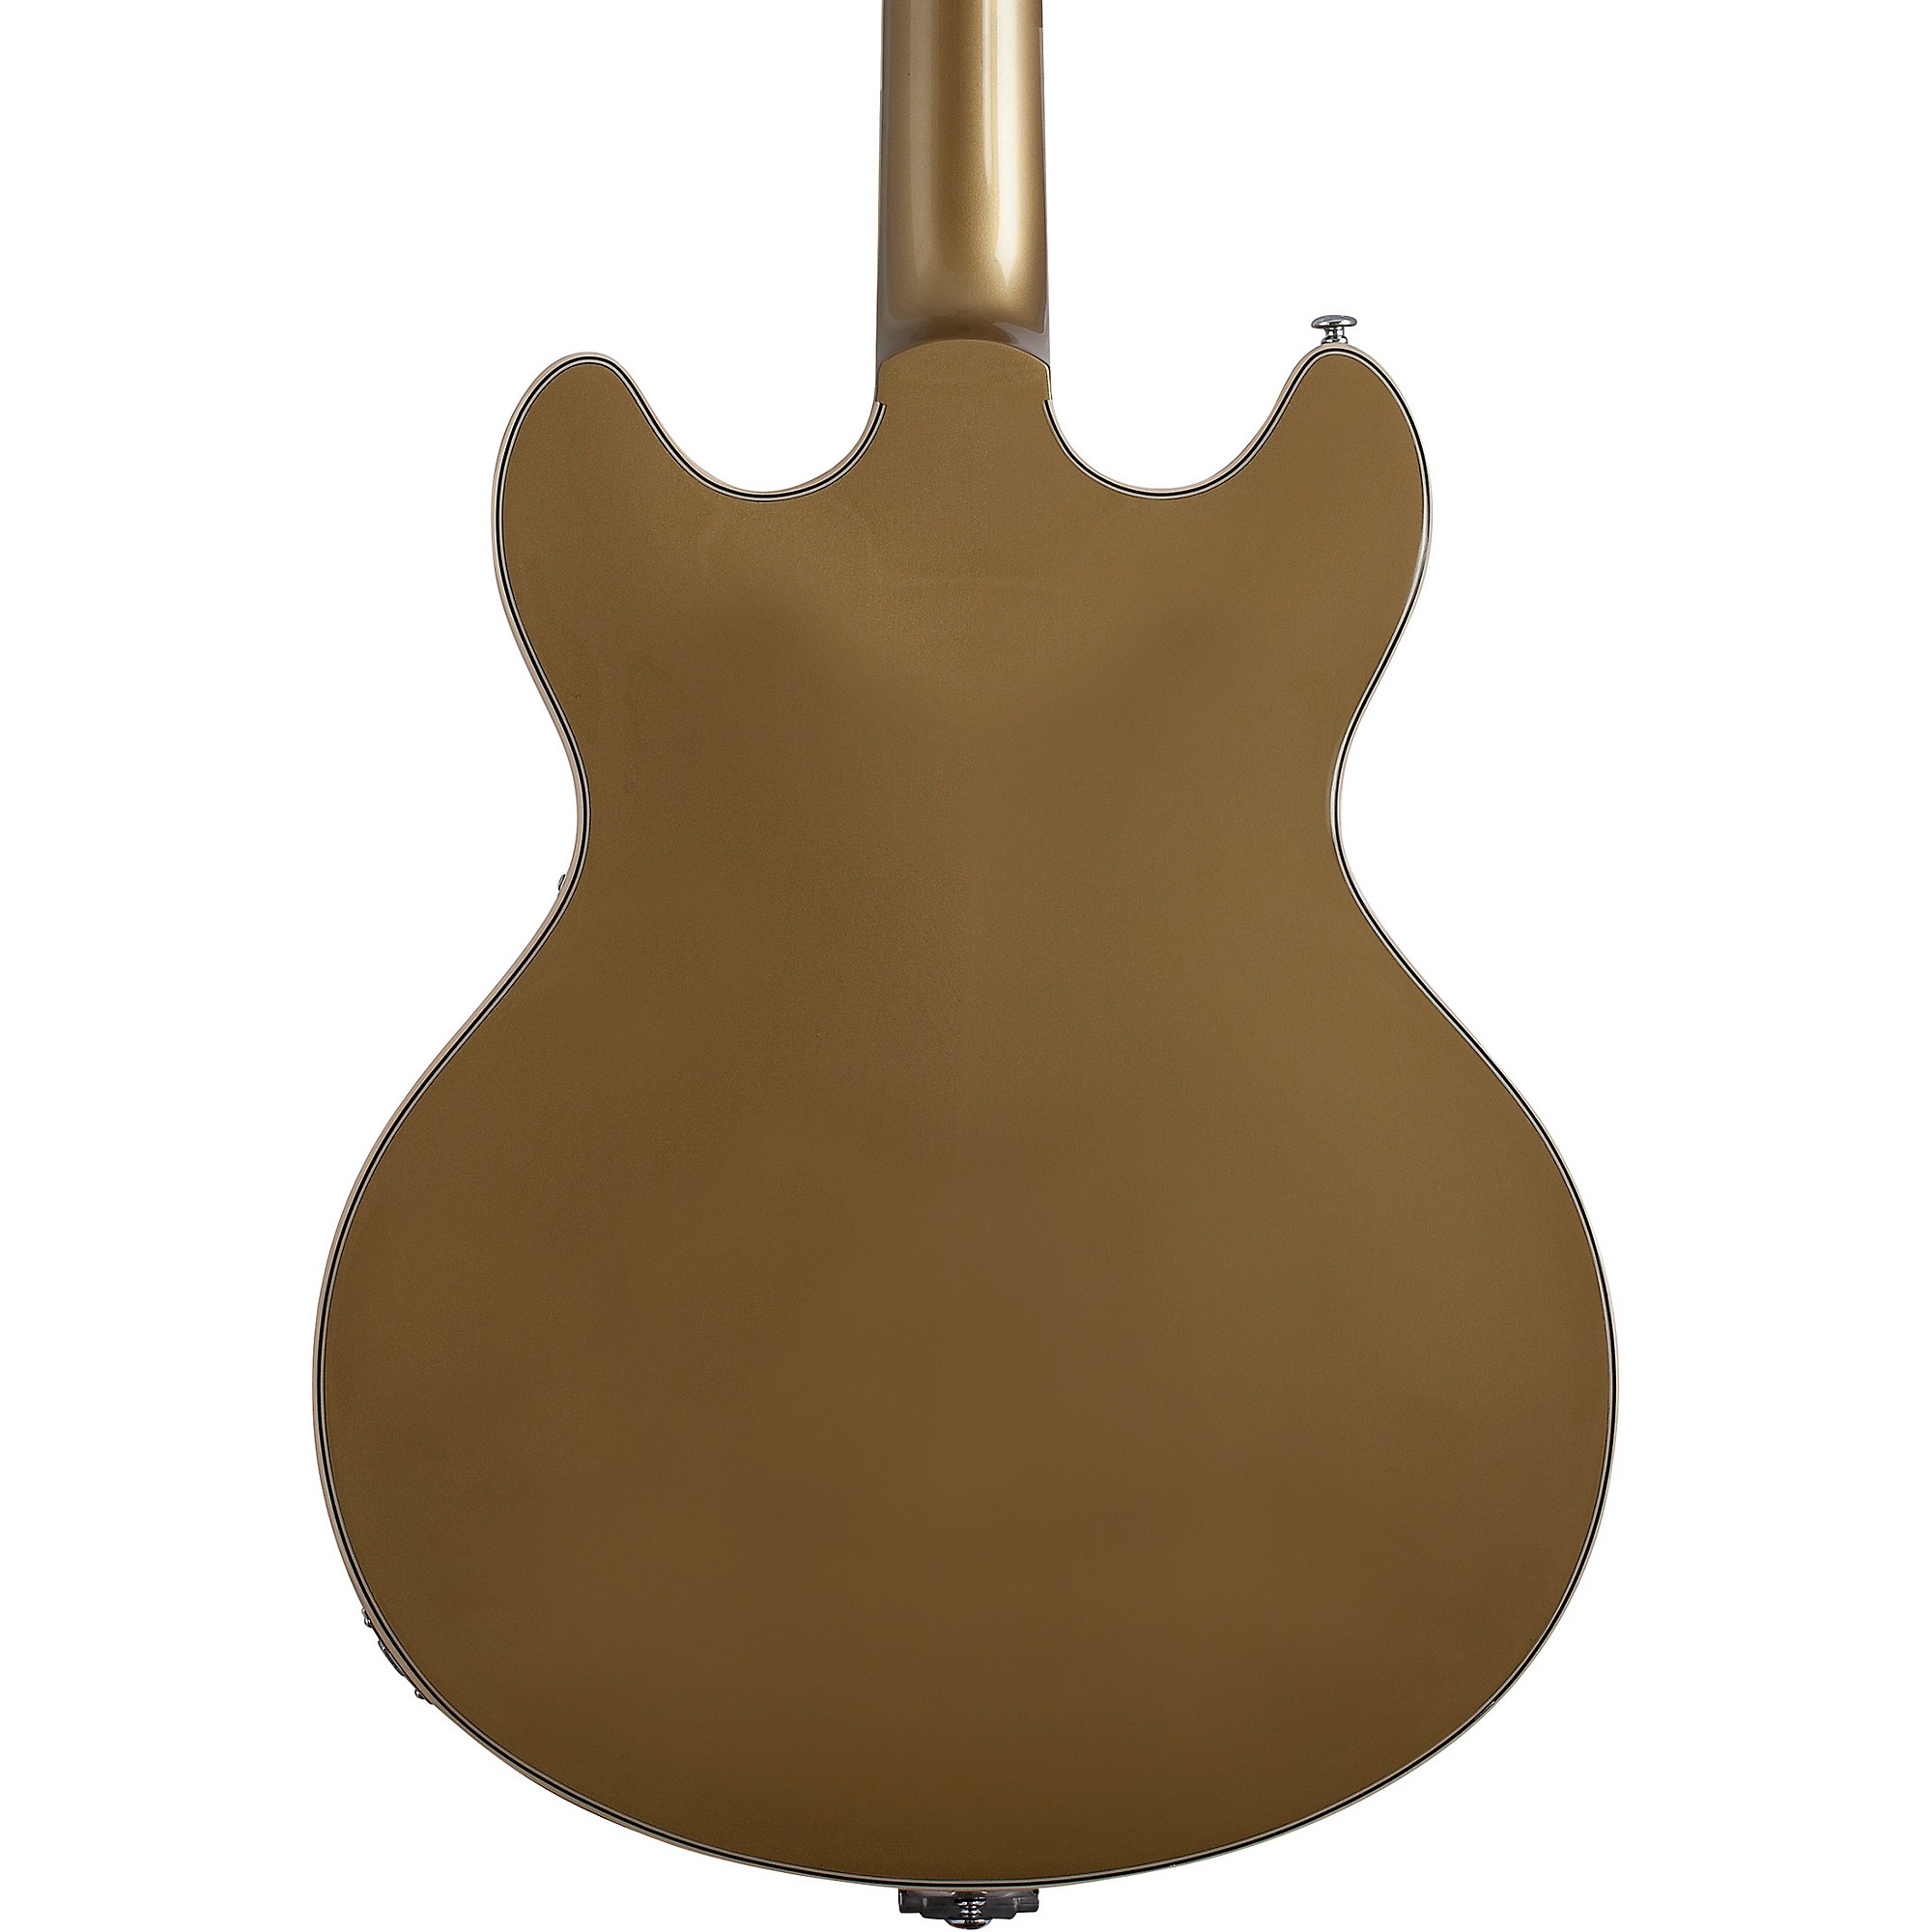 Schecter Guitar Research Corsair Полуполая электрогитара с золотым верхом